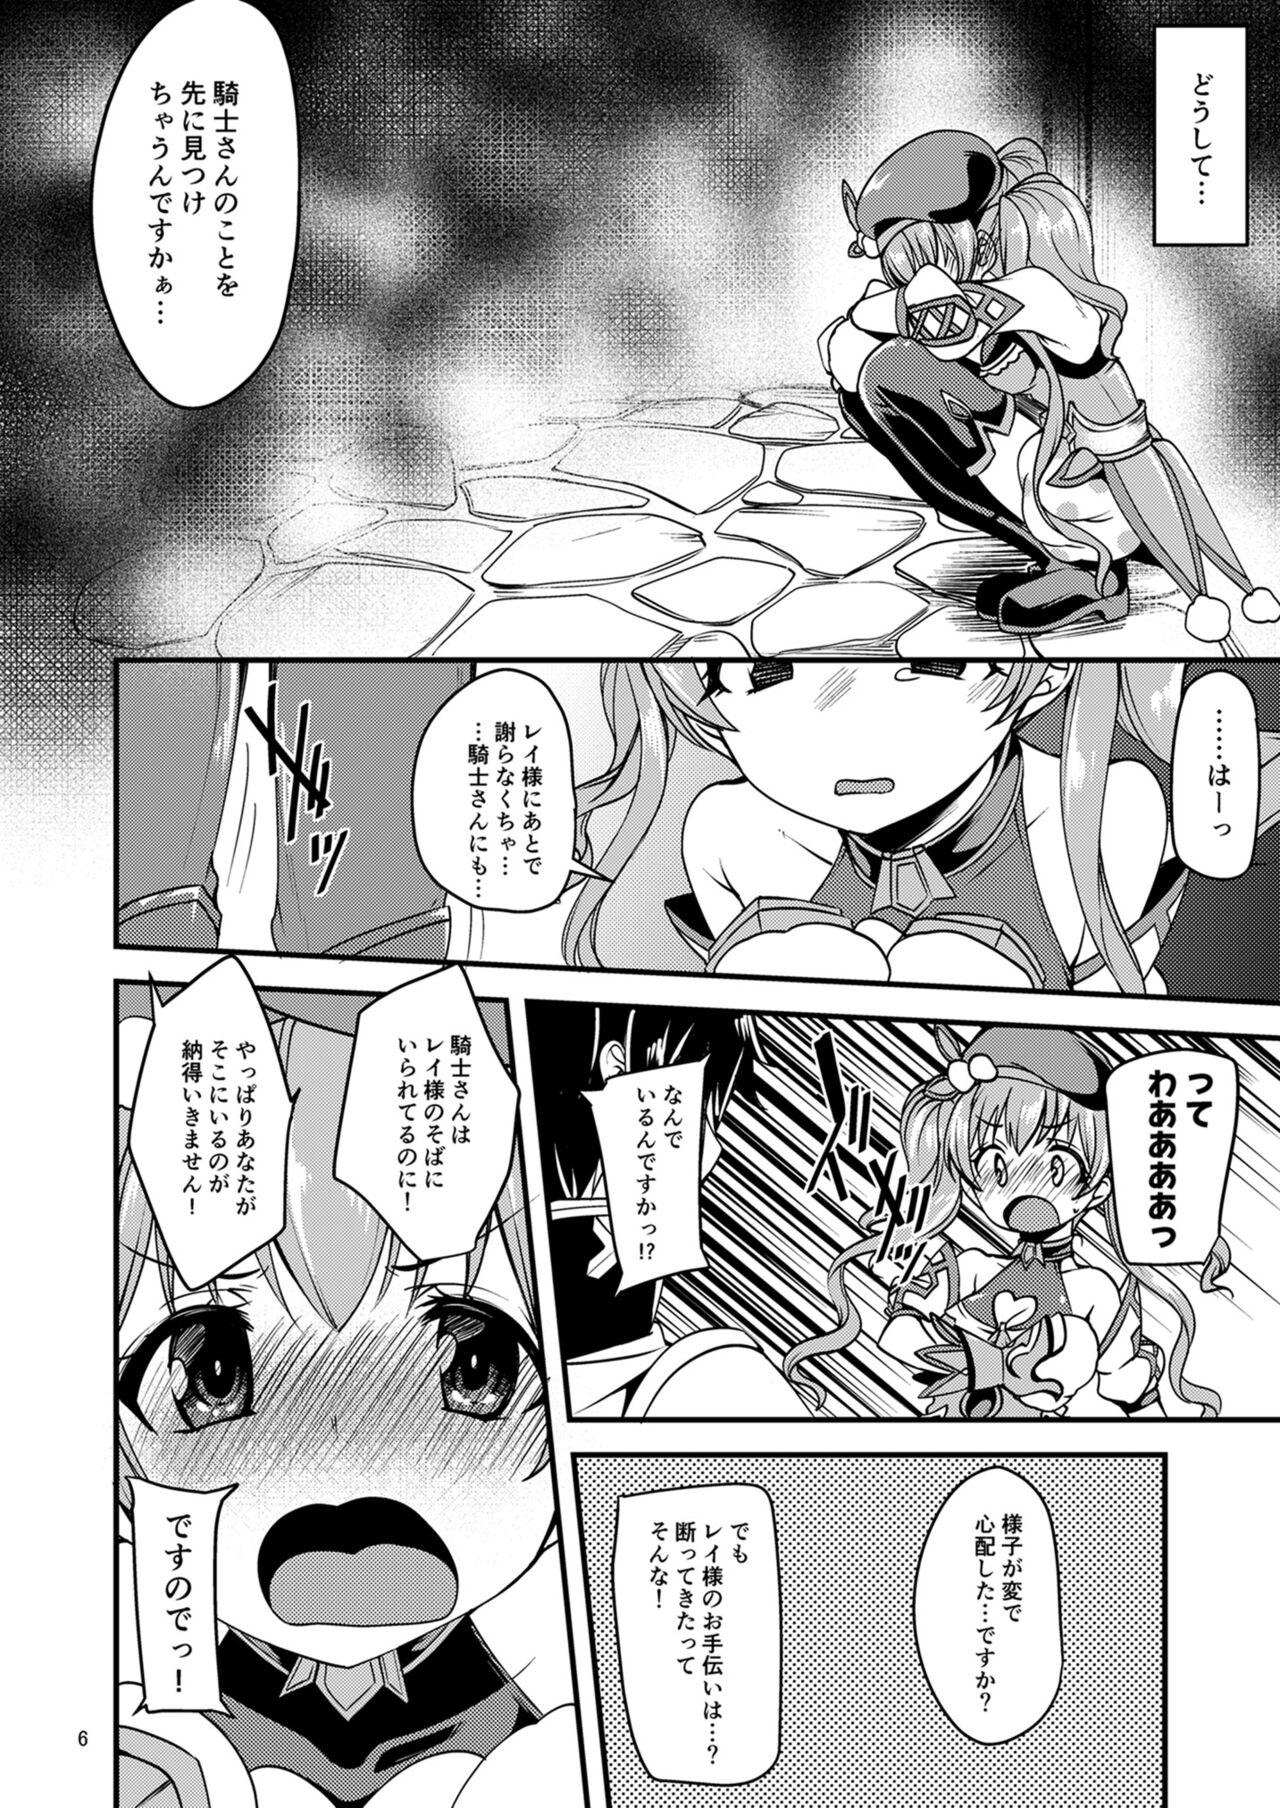 Magrinha Tsumugi Make Heroine Move!! - Princess connect Cavala - Page 5